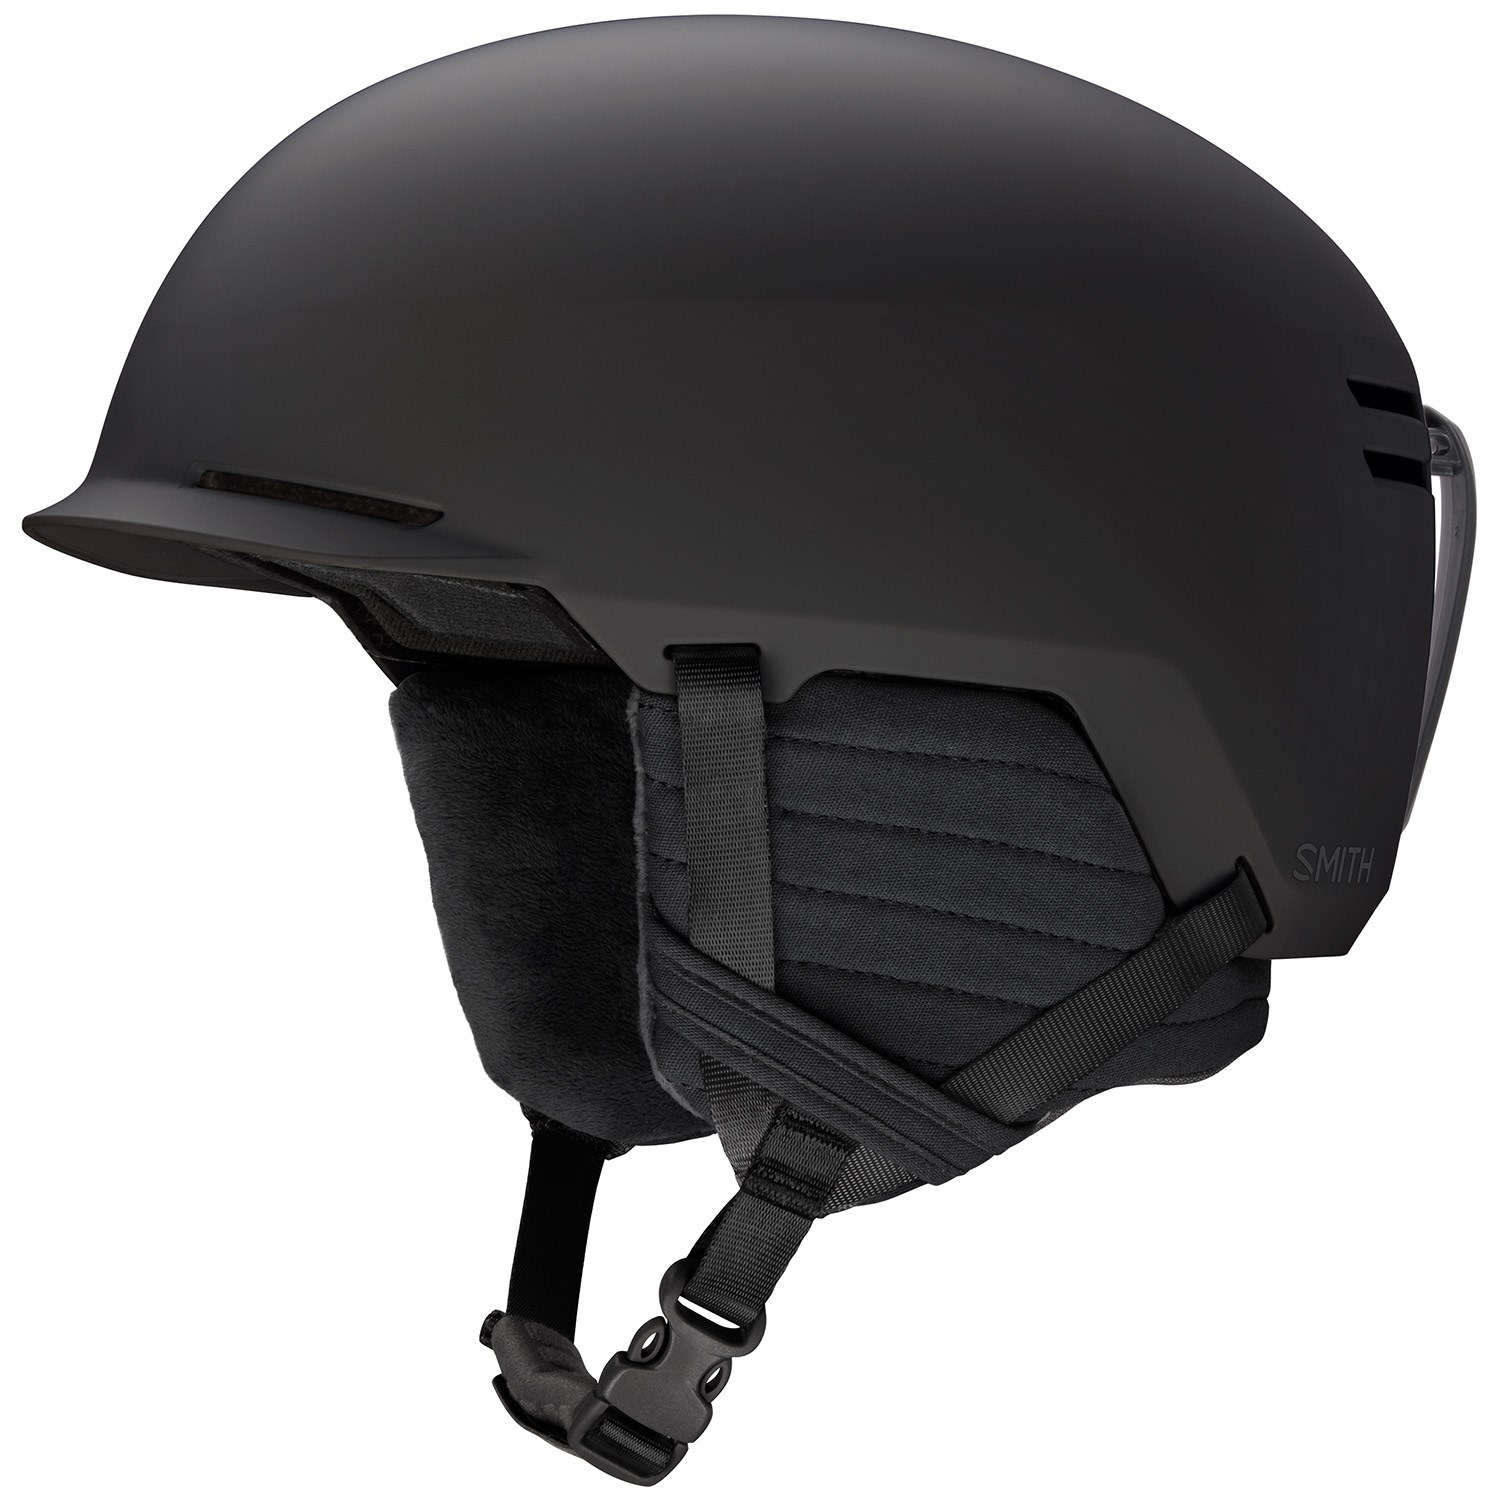 Detail Images Of Helmet Nomer 12